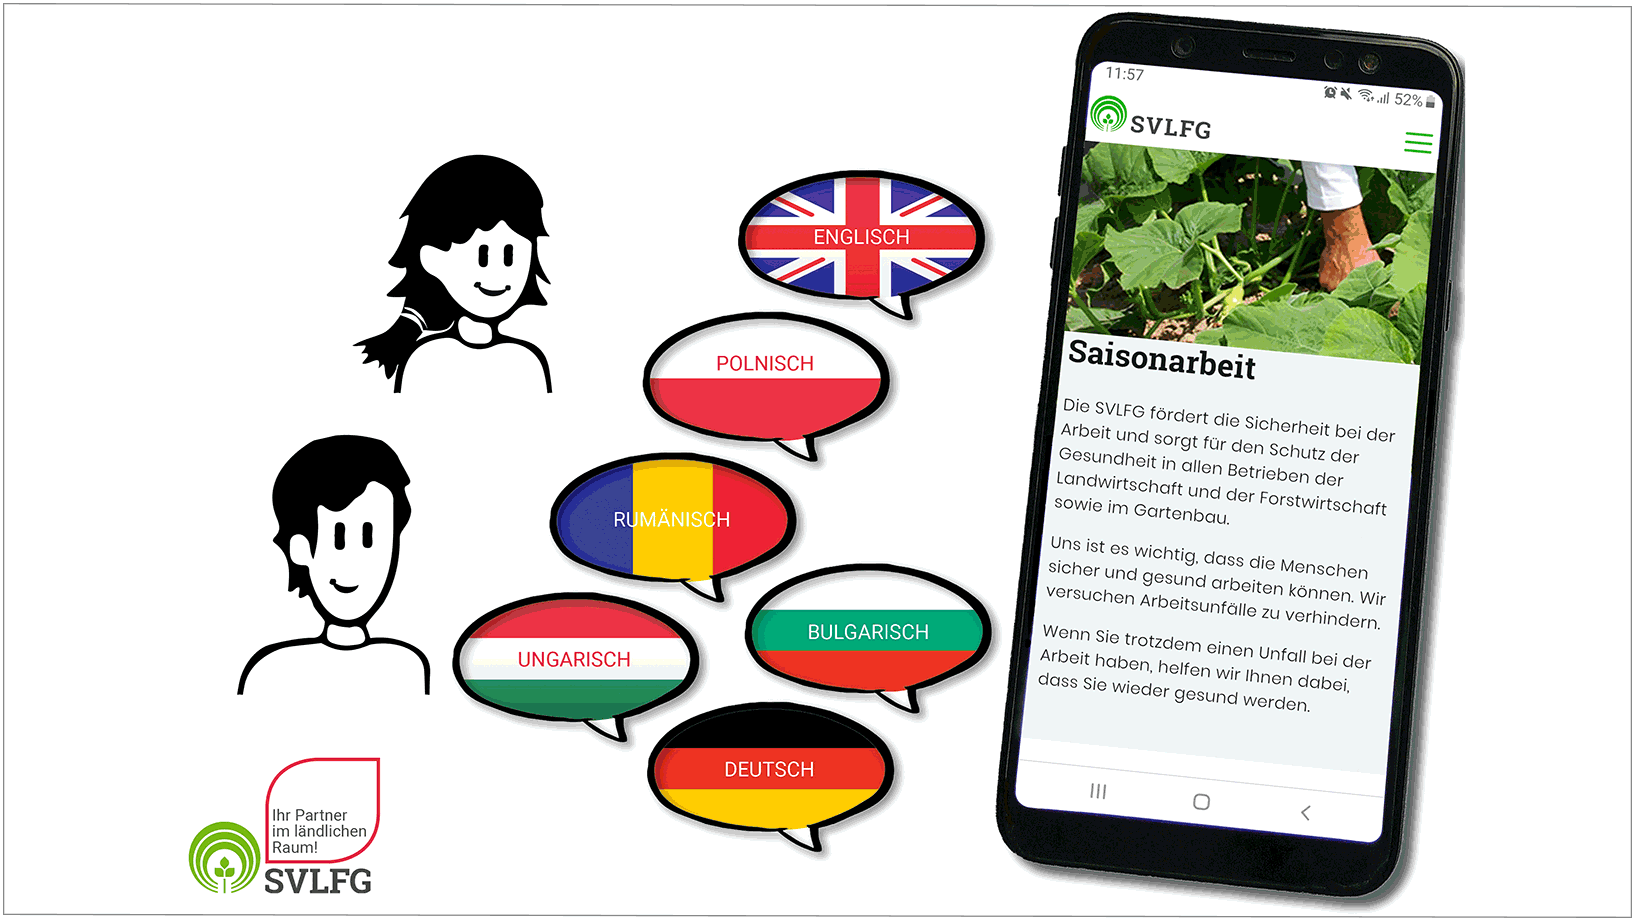 Vergrößerung des Bildes für Grafik. Auf einem Mobiltelefon ist die WEB-APP für Saisonarbeitskräfte geöffnet. Daneben sind Sprechblasen, die mit den Flaggen von der UK, Polen, Rumänien, Bulgarien, Ungarn und Deutschland gefüllt sind.  .